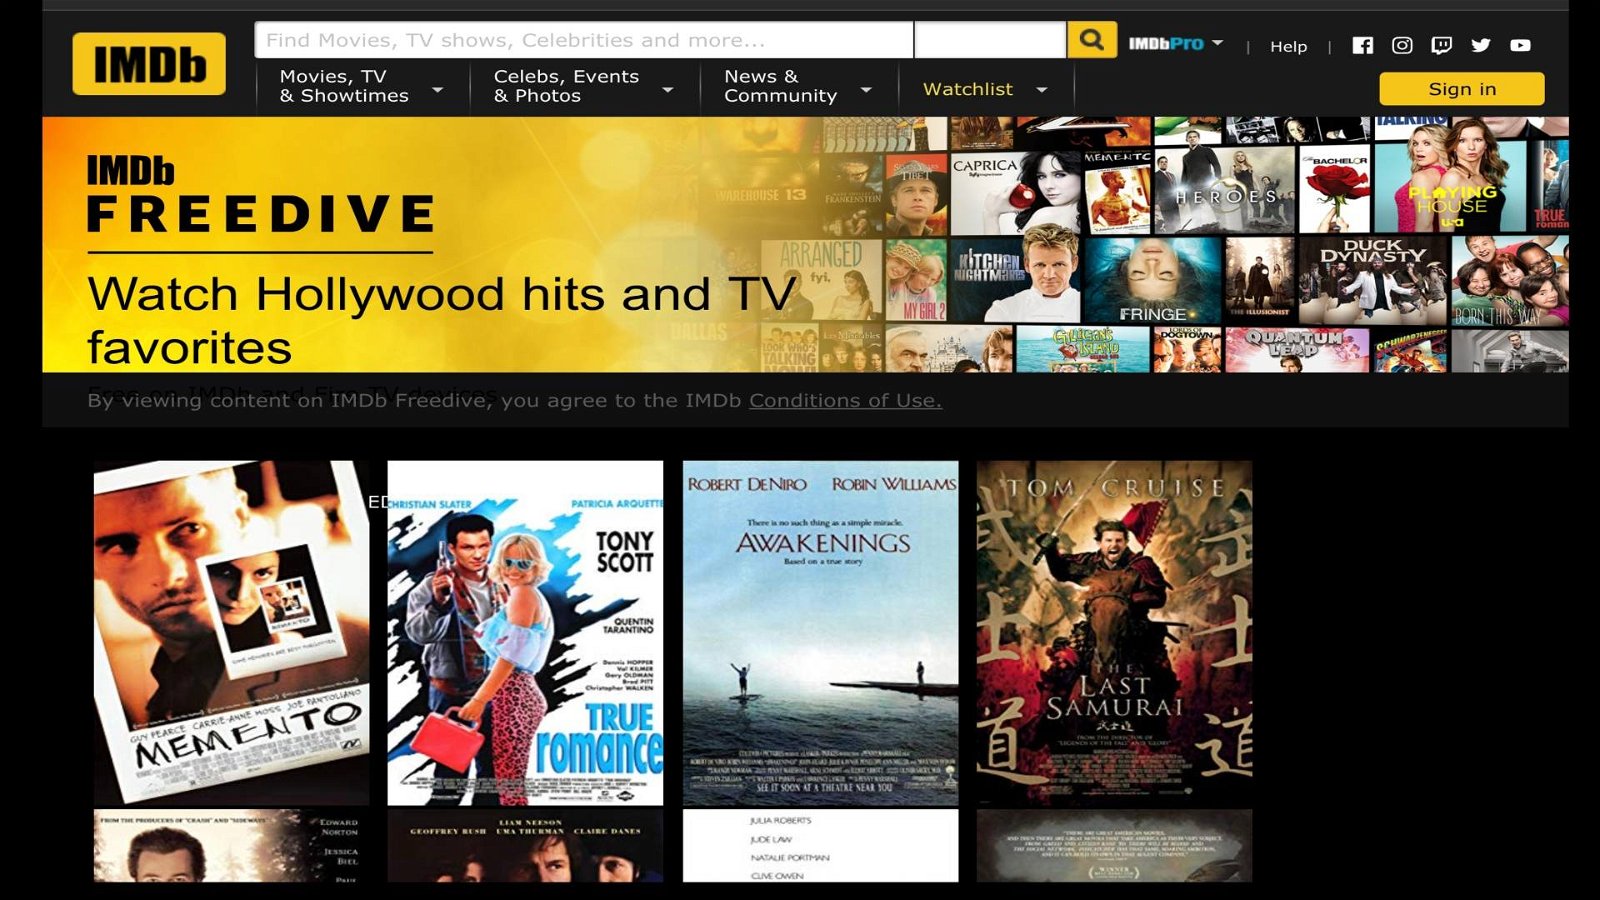 Immagine di (Amazon) IMDB Freedive, streaming di film e serie TV gratuito basato sulla pubblicità